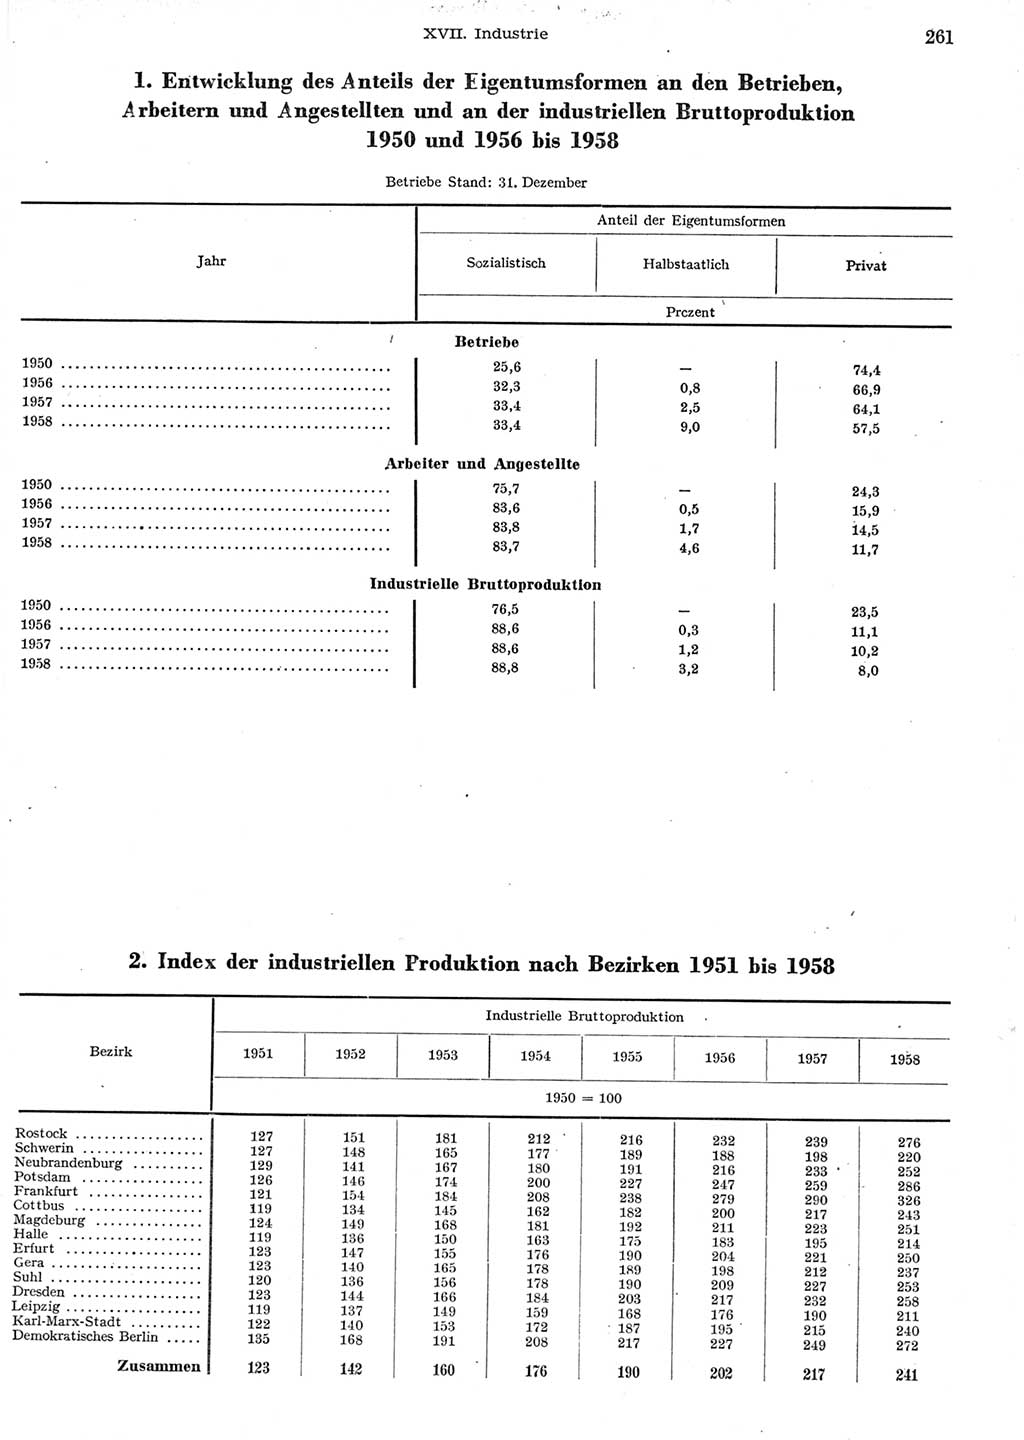 Statistisches Jahrbuch der Deutschen Demokratischen Republik (DDR) 1958, Seite 261 (Stat. Jb. DDR 1958, S. 261)